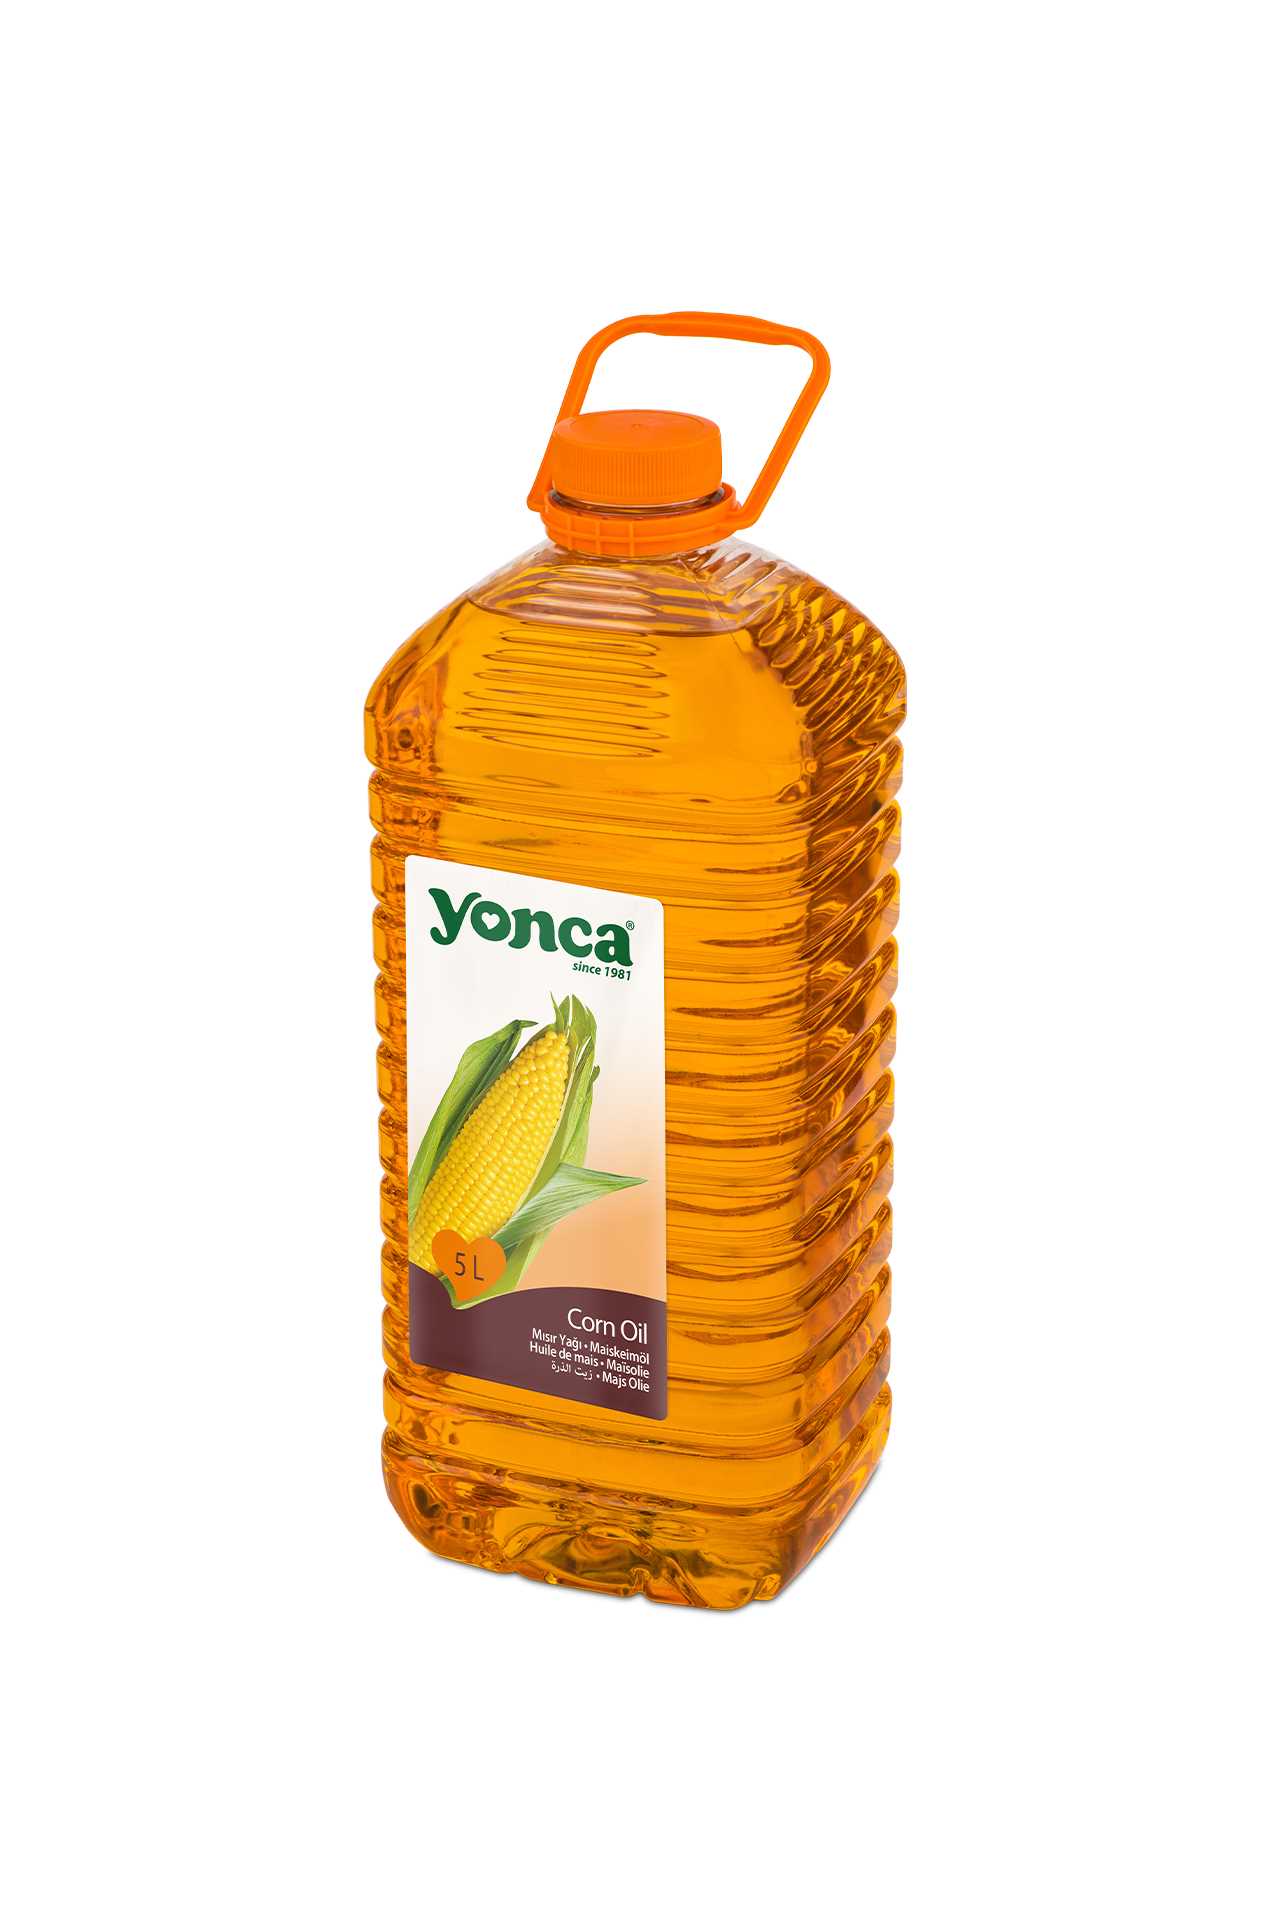 Corn Oil 5 L | Yonca Food